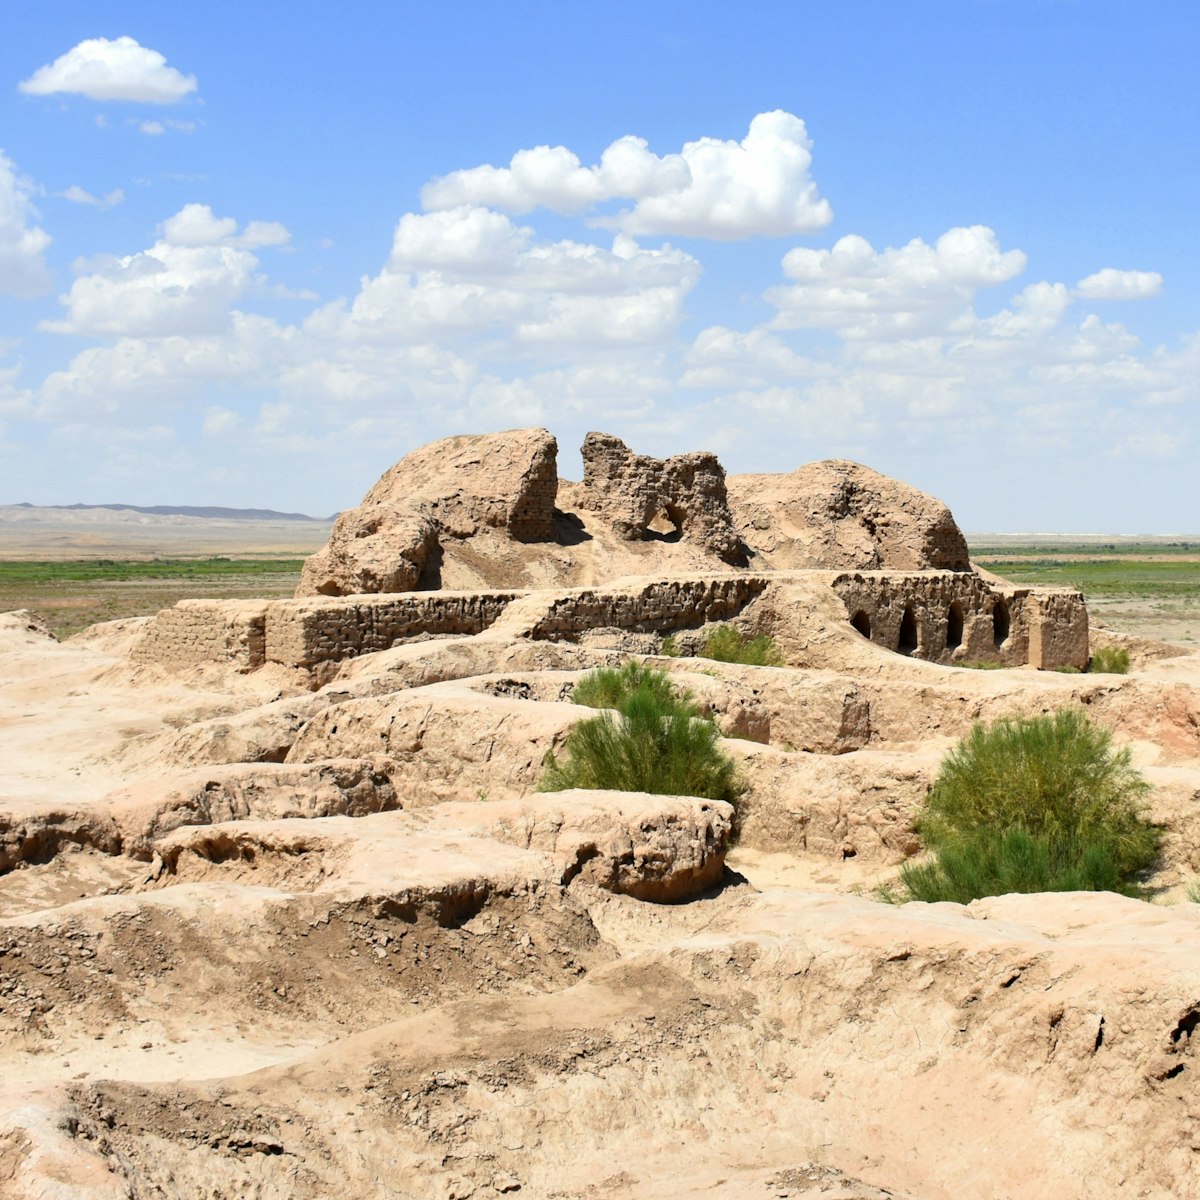 Ruins of the Toprak Qala fort in Uzbekistan.
